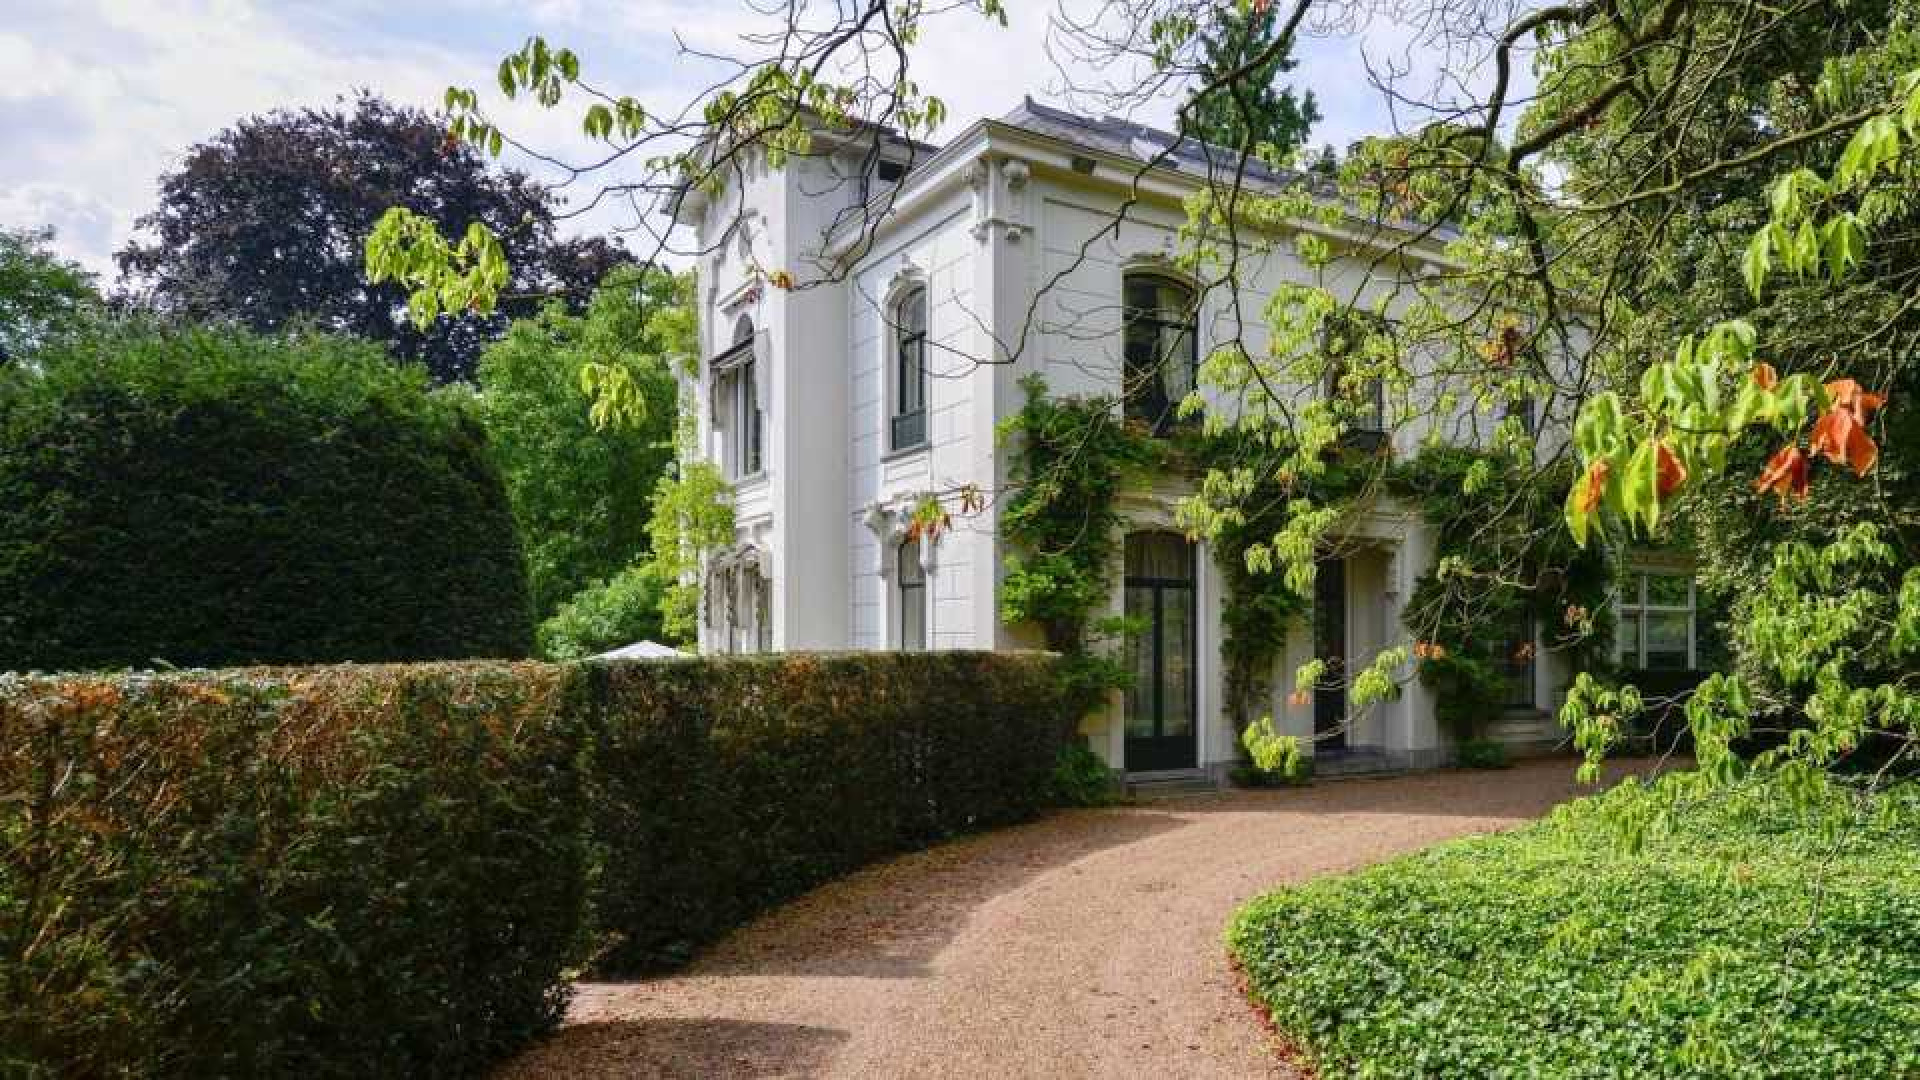 Prinses Irene zet haar prachtige landhuis in Wijk bij Duurstede te koop. Zie foto's